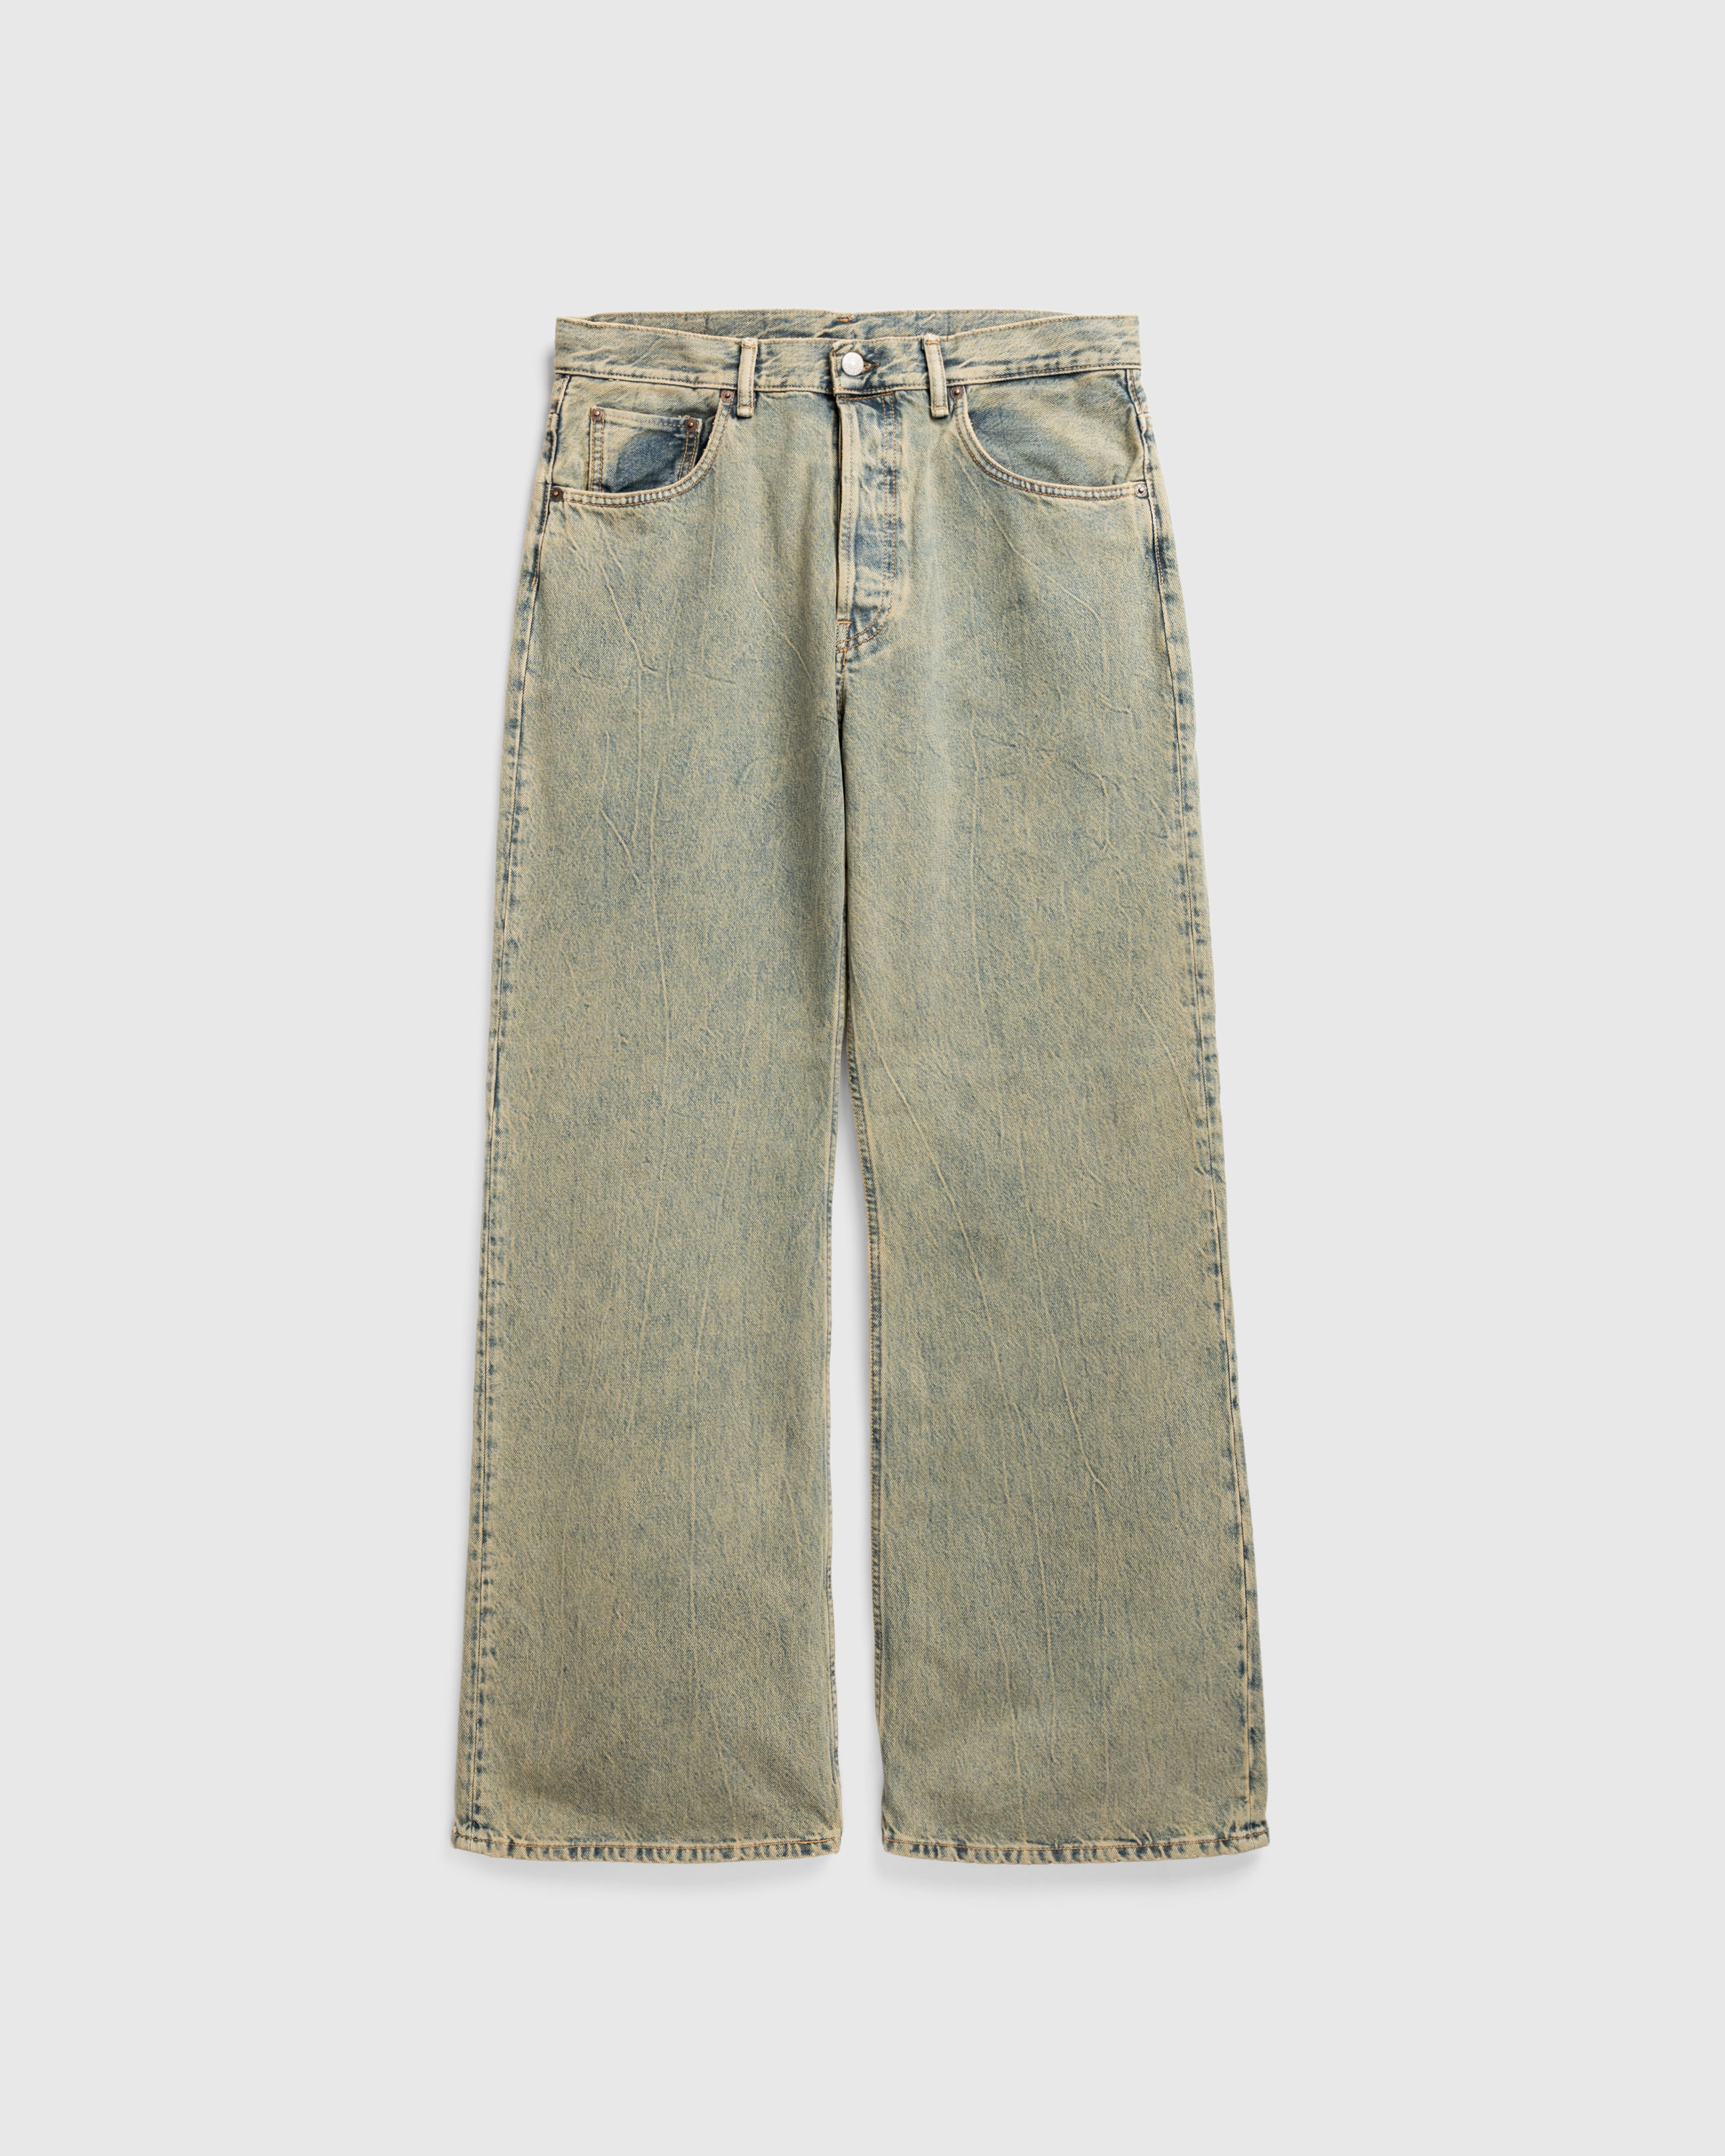 Acne Studios – Loose Fit Jeans 2021M Blue/Beige - Pants - Blue - Image 1